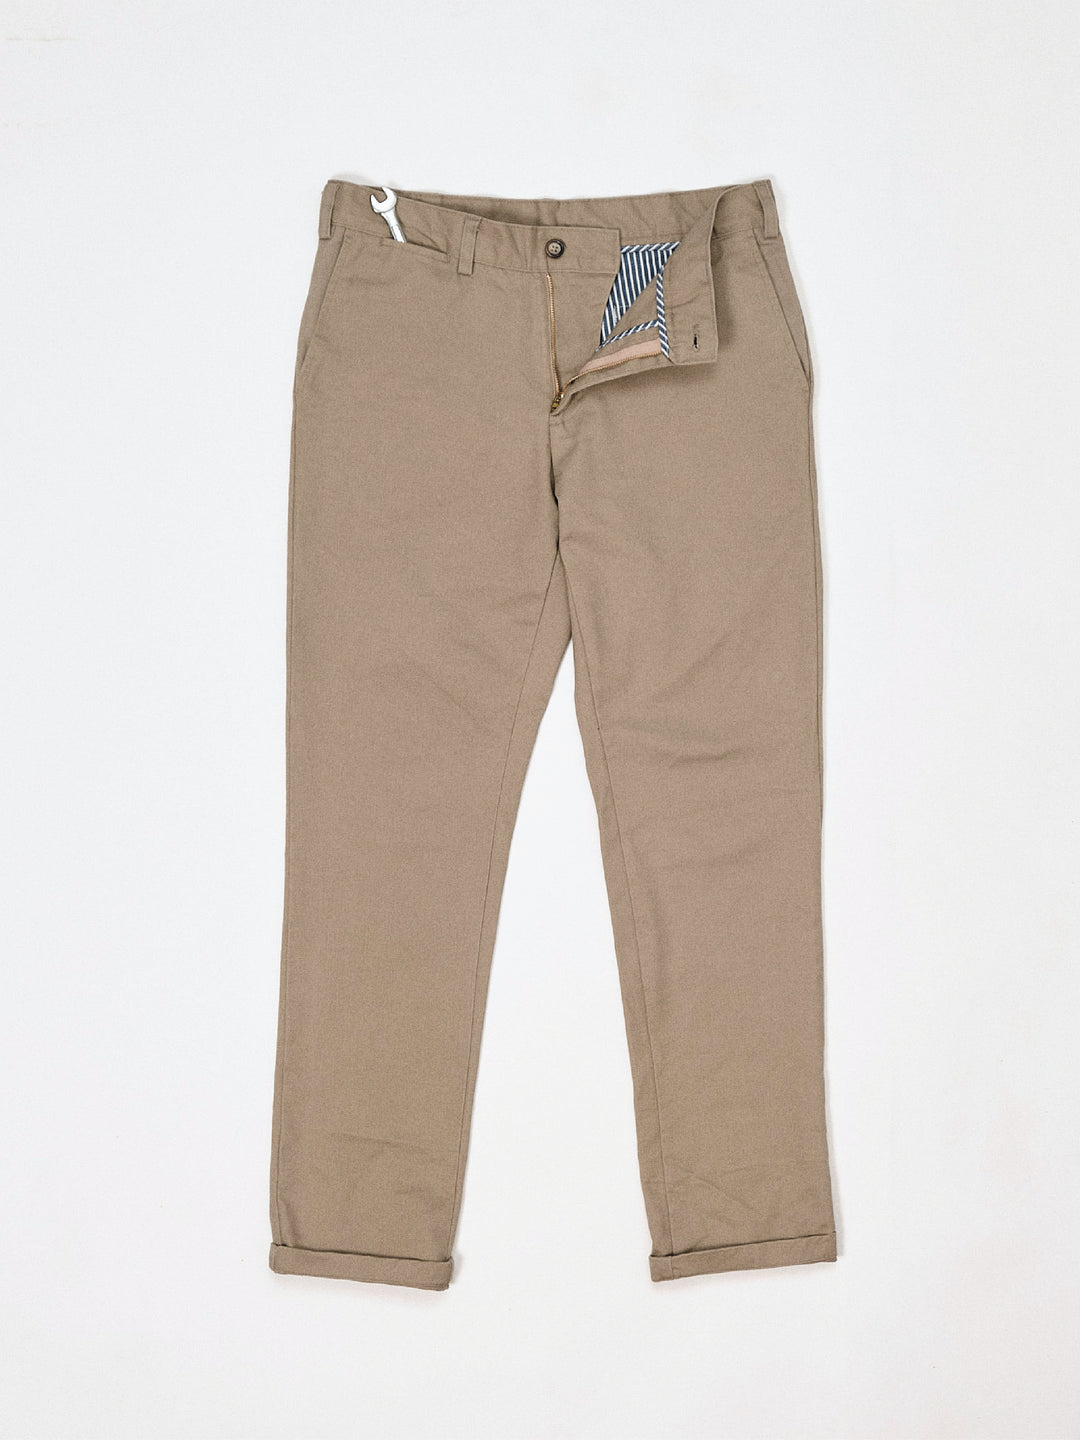 Men's Trousers - Shop Men's Trousers Online